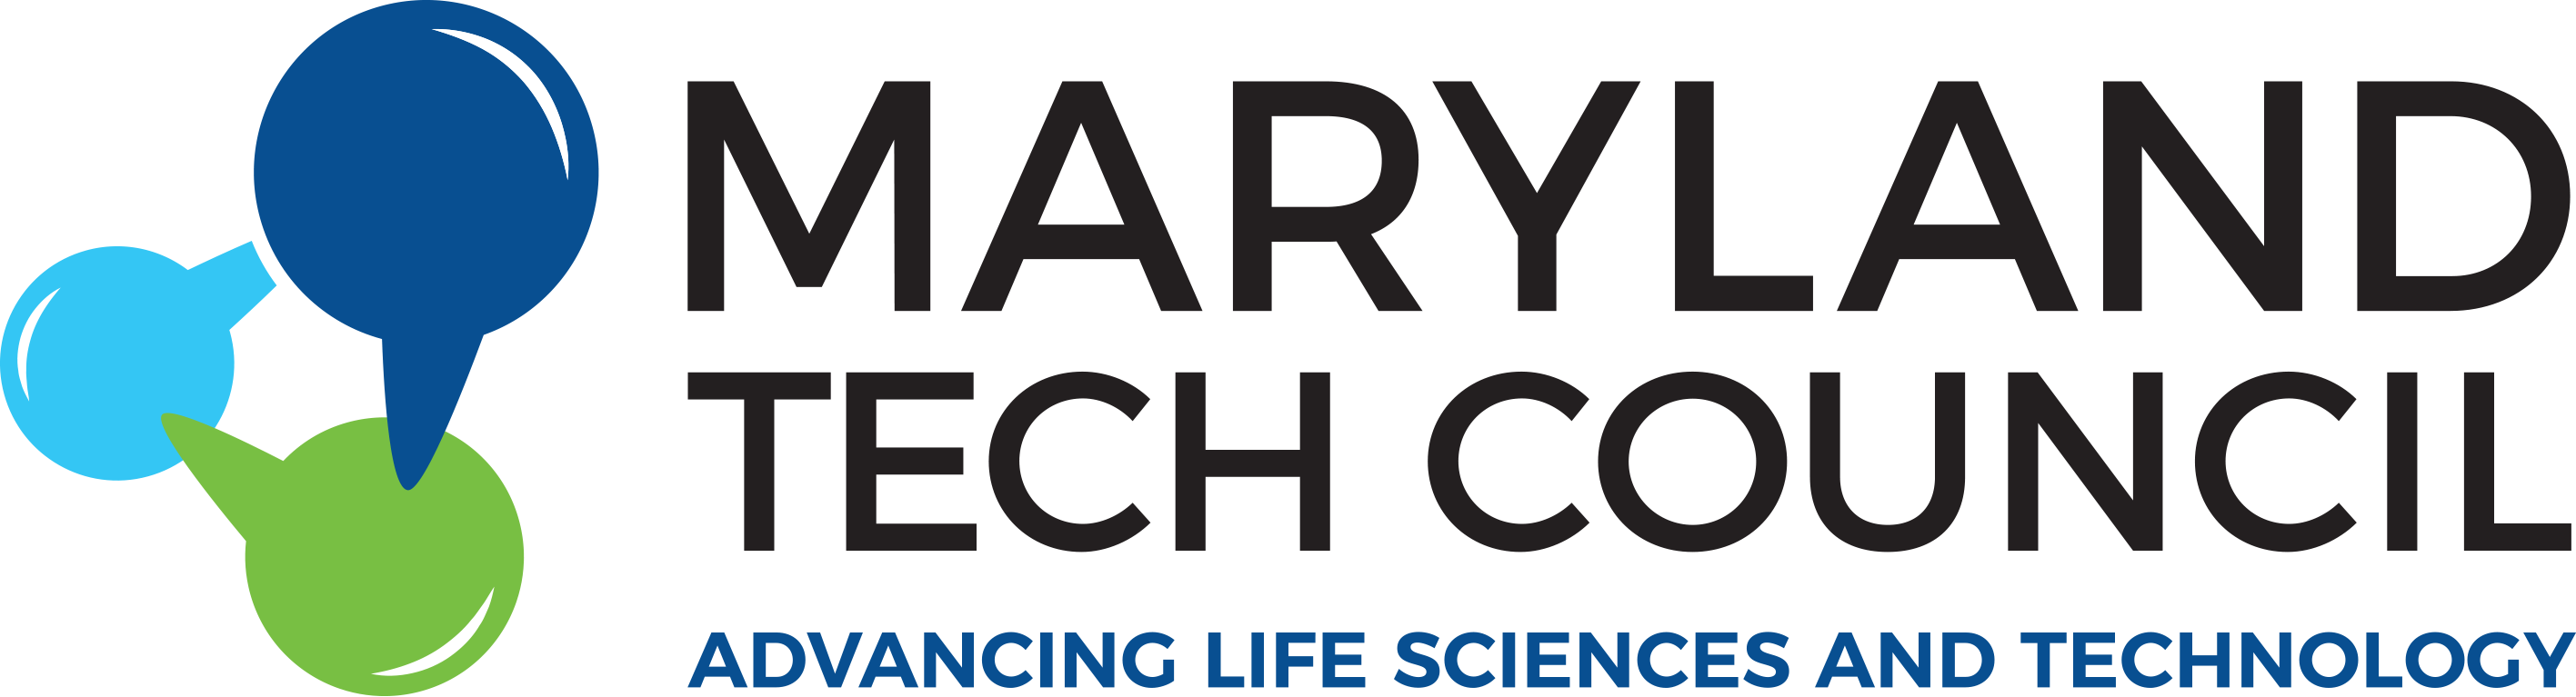 Maryland Tech Council Logo